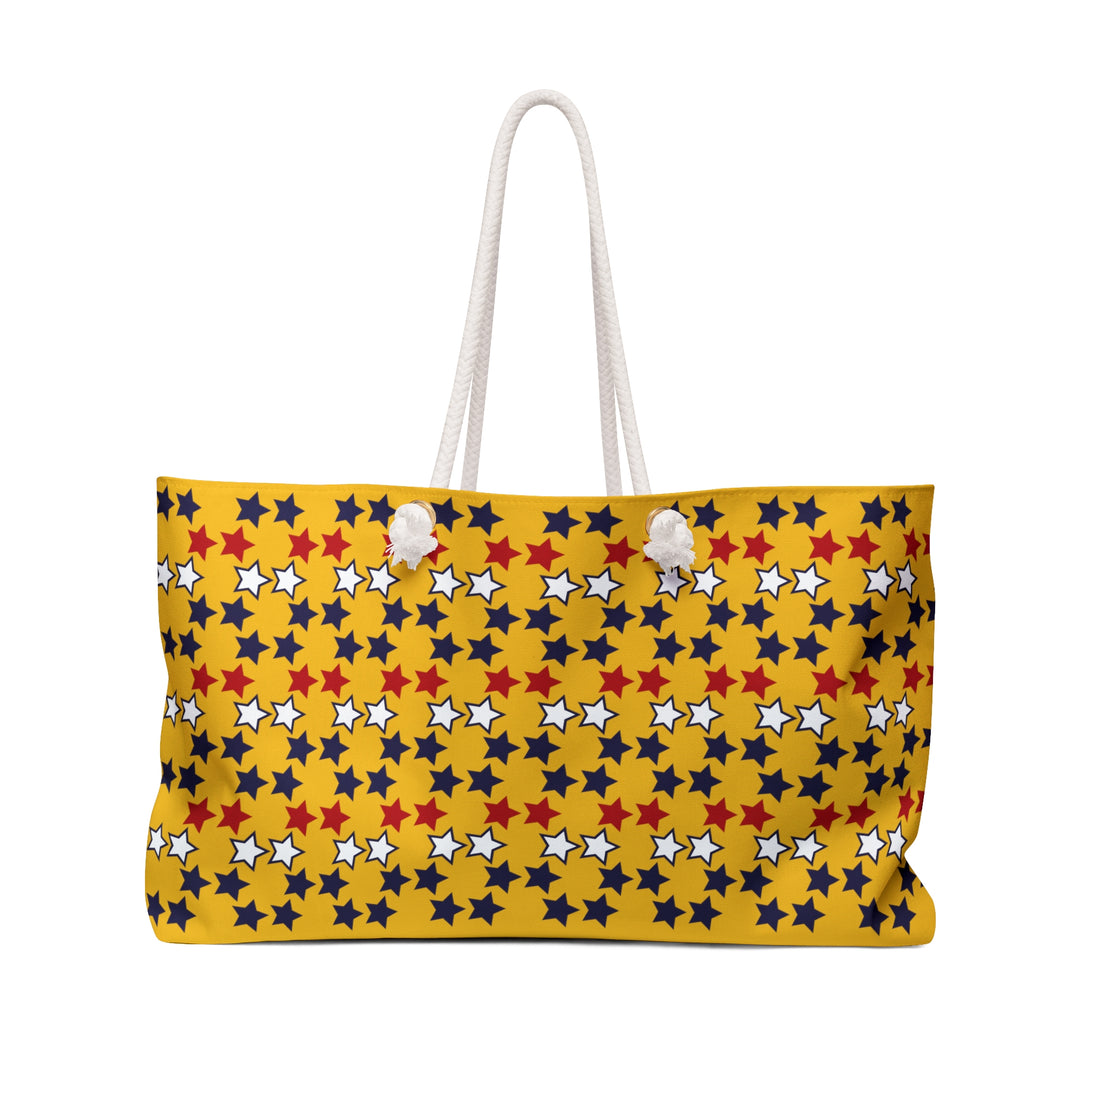 Yellow Starry Weekender Tote Bag